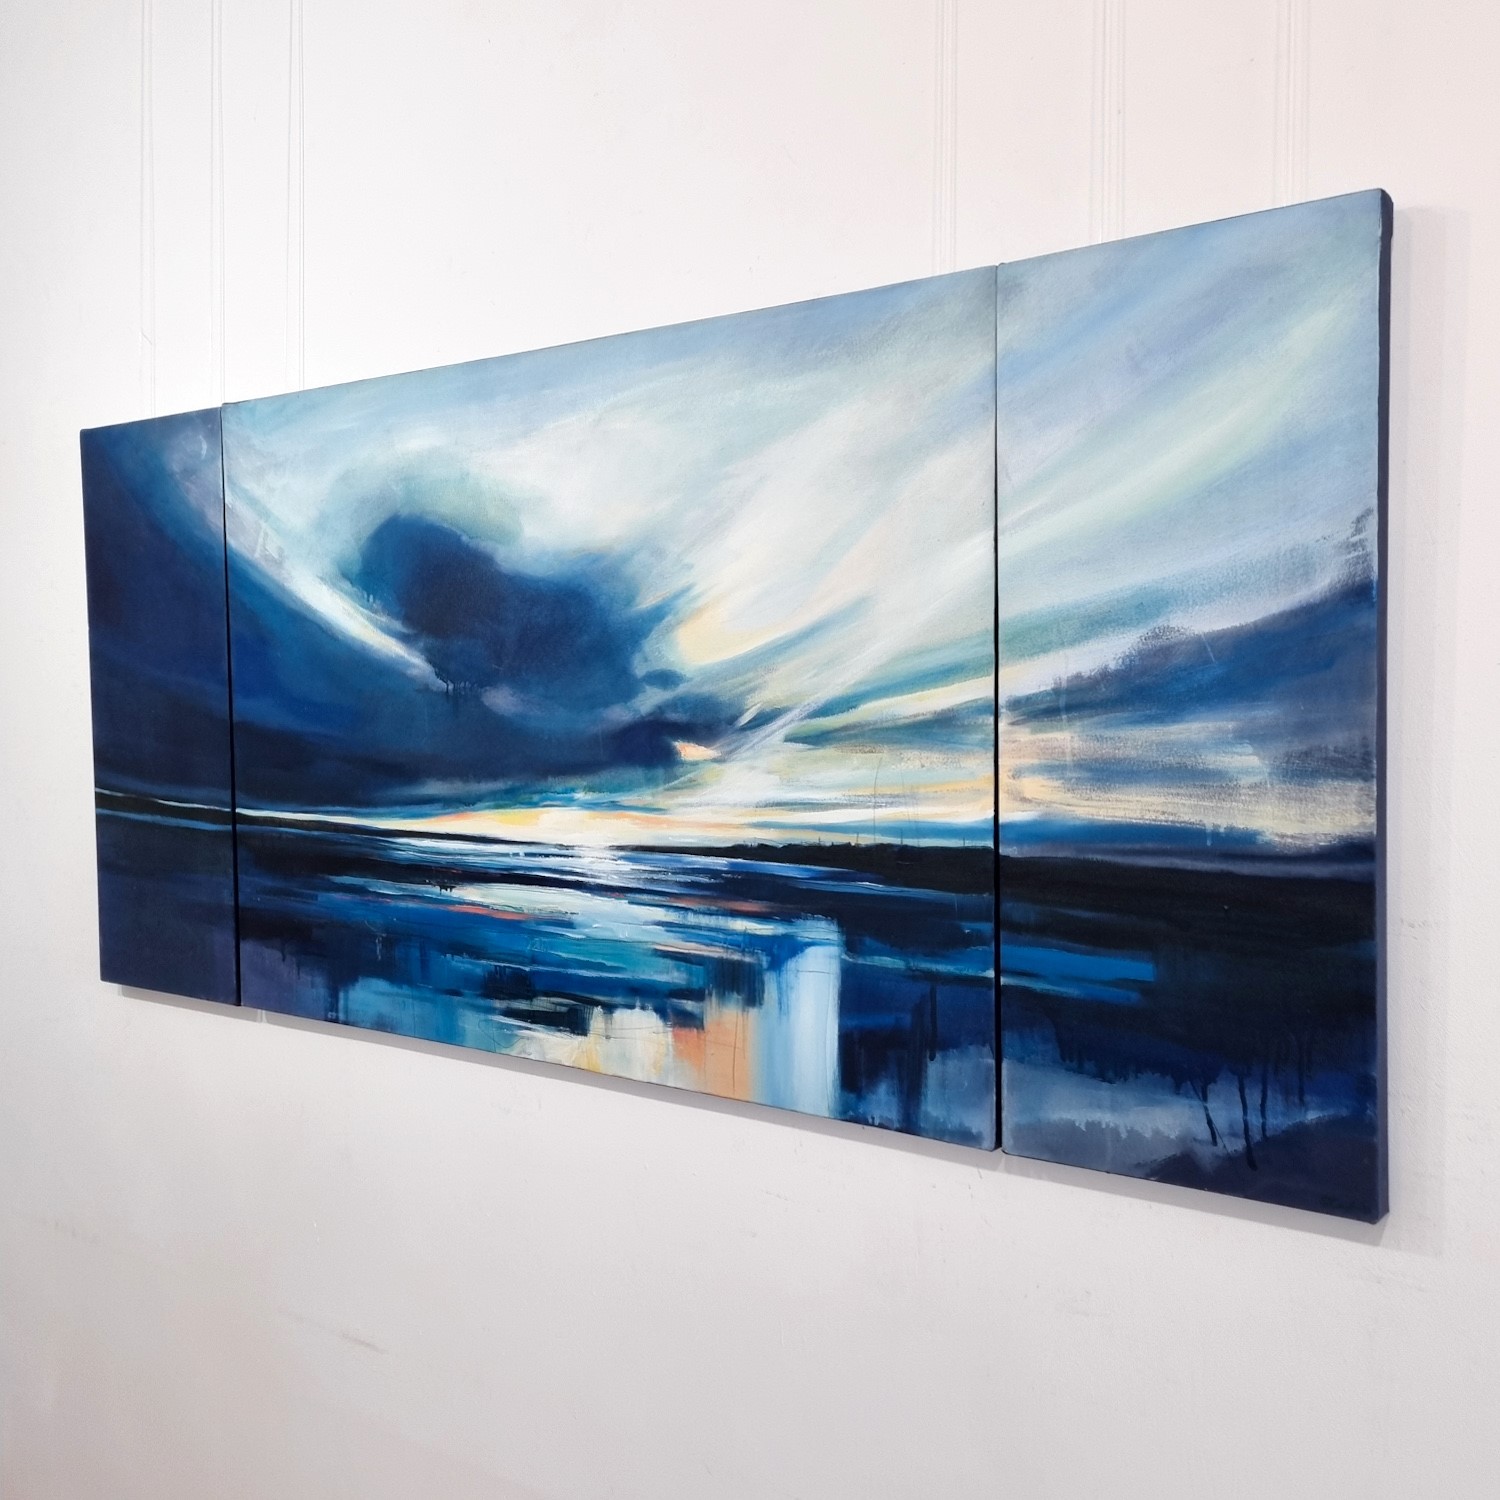 'Dusk Over Largo Bay' by artist Sarah Carrington